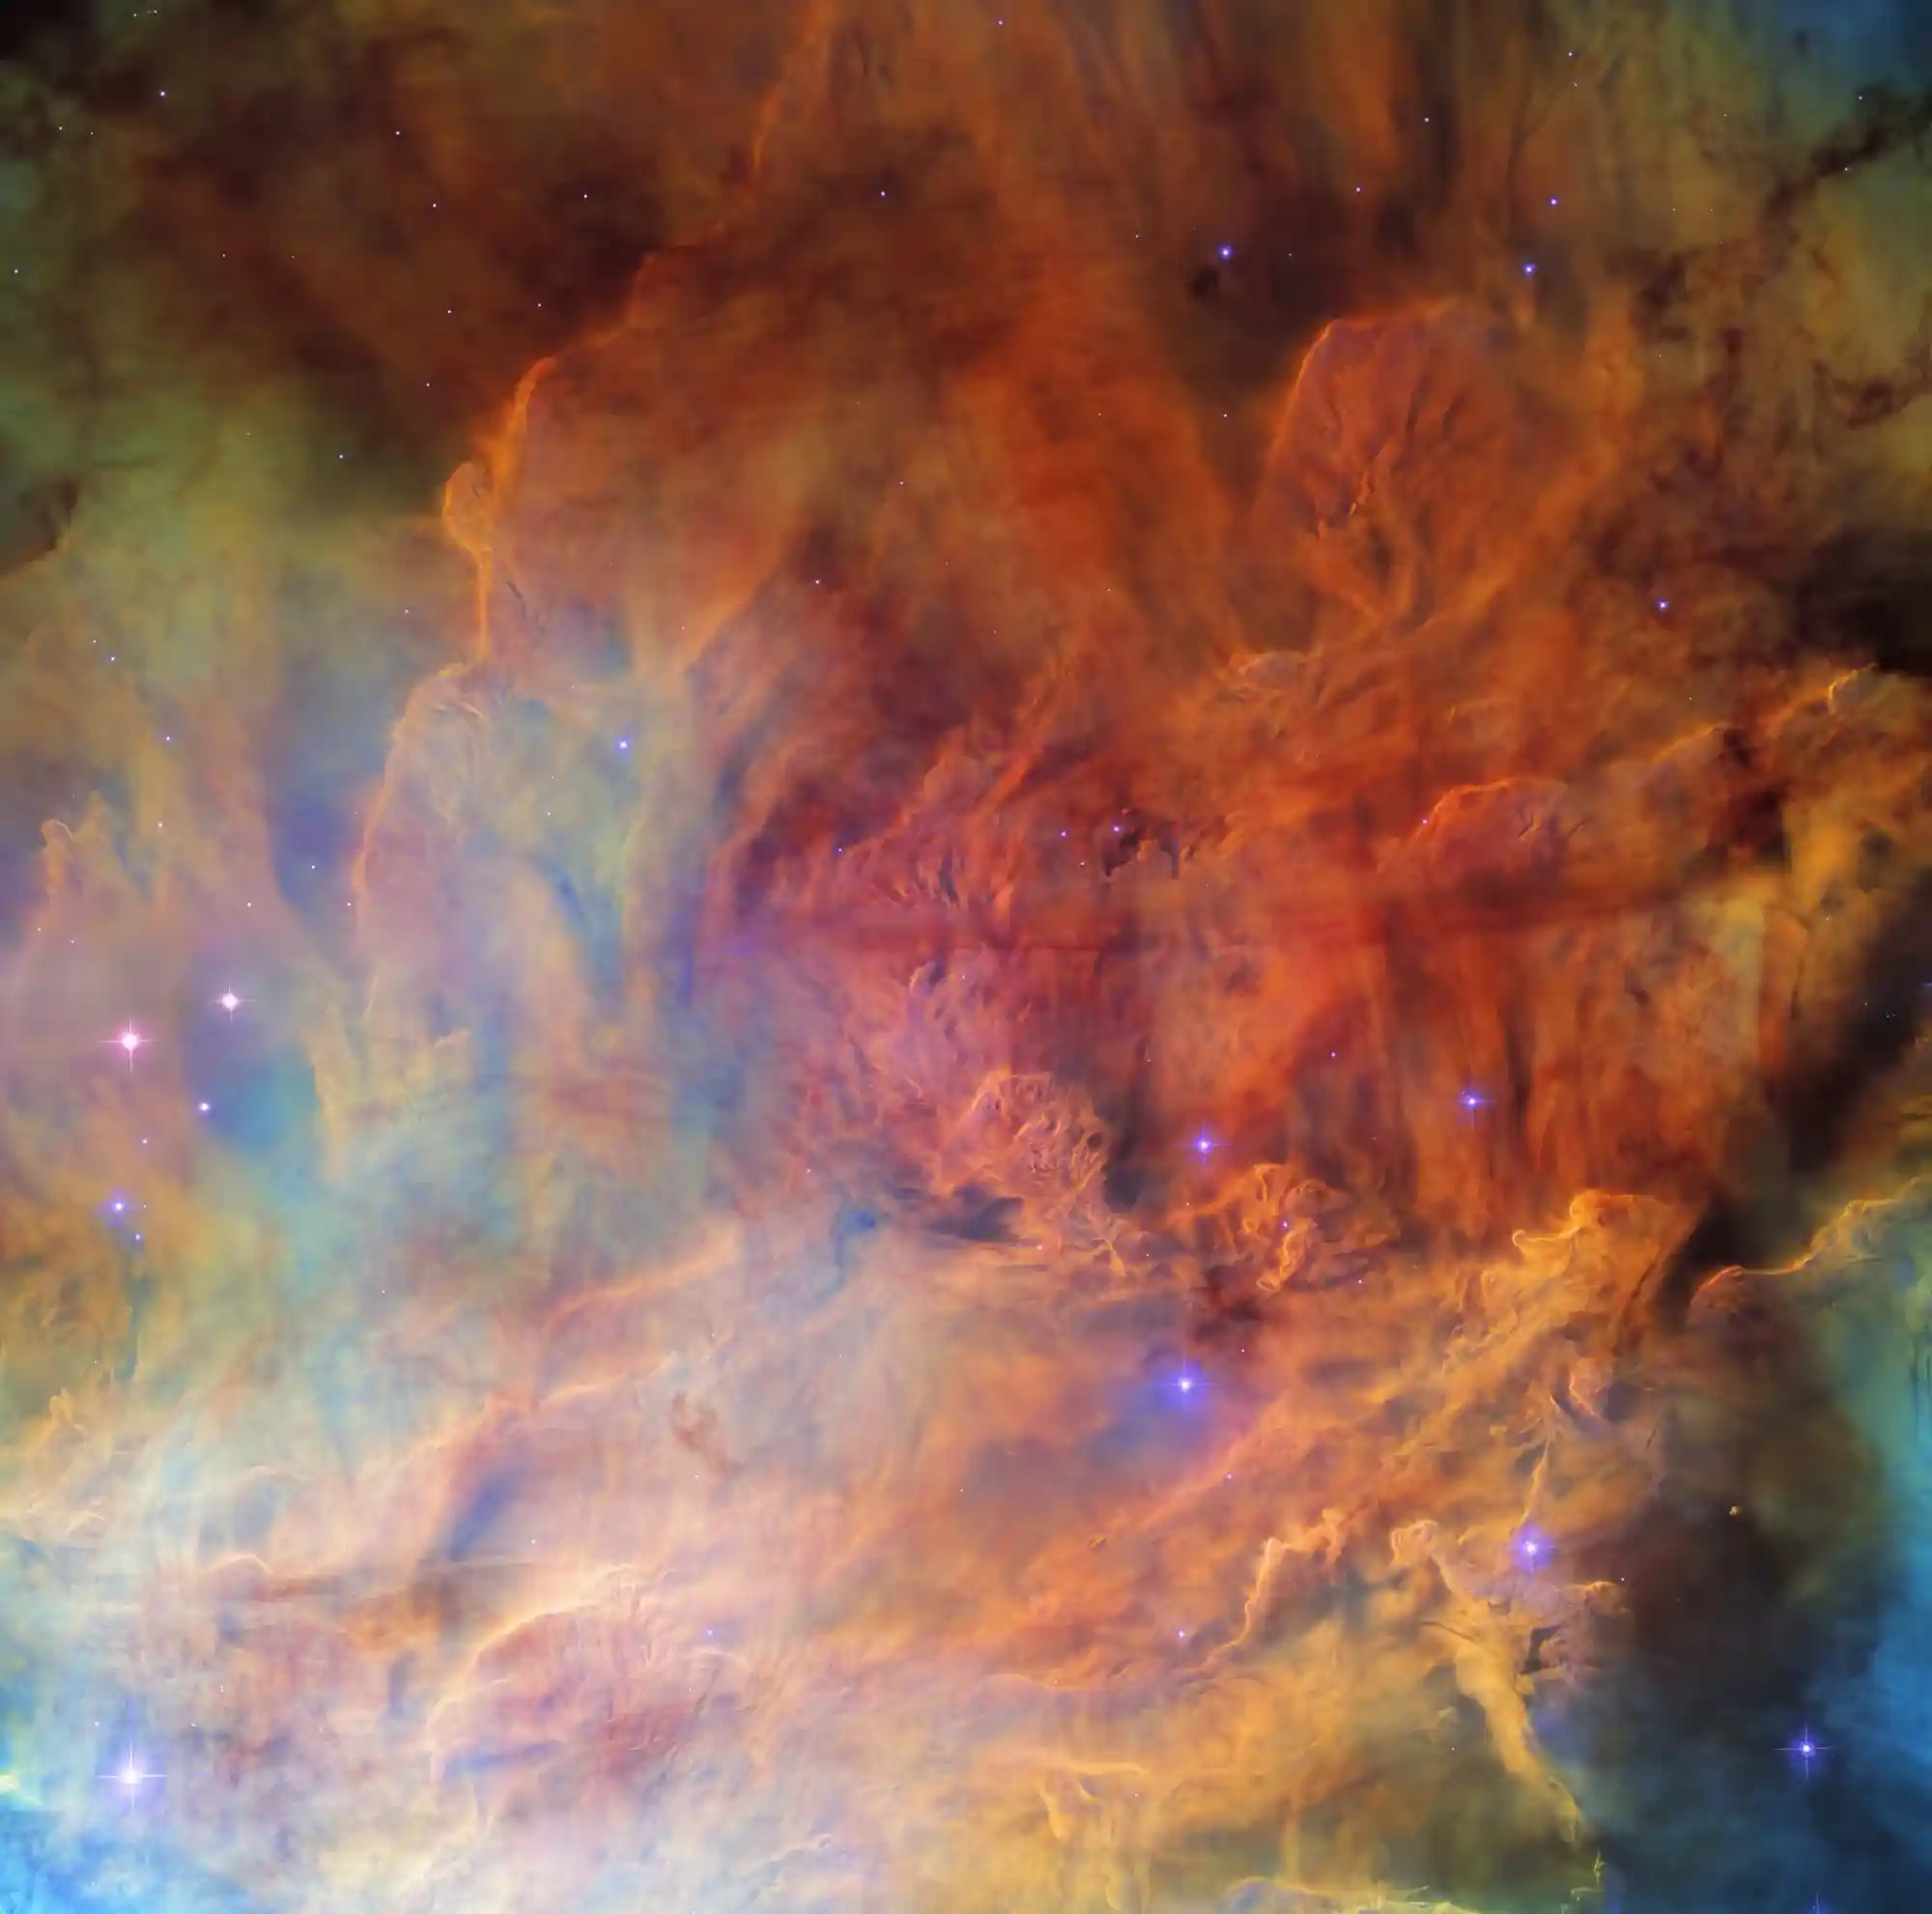 messier 8 the lagoon nebula in sagittarius